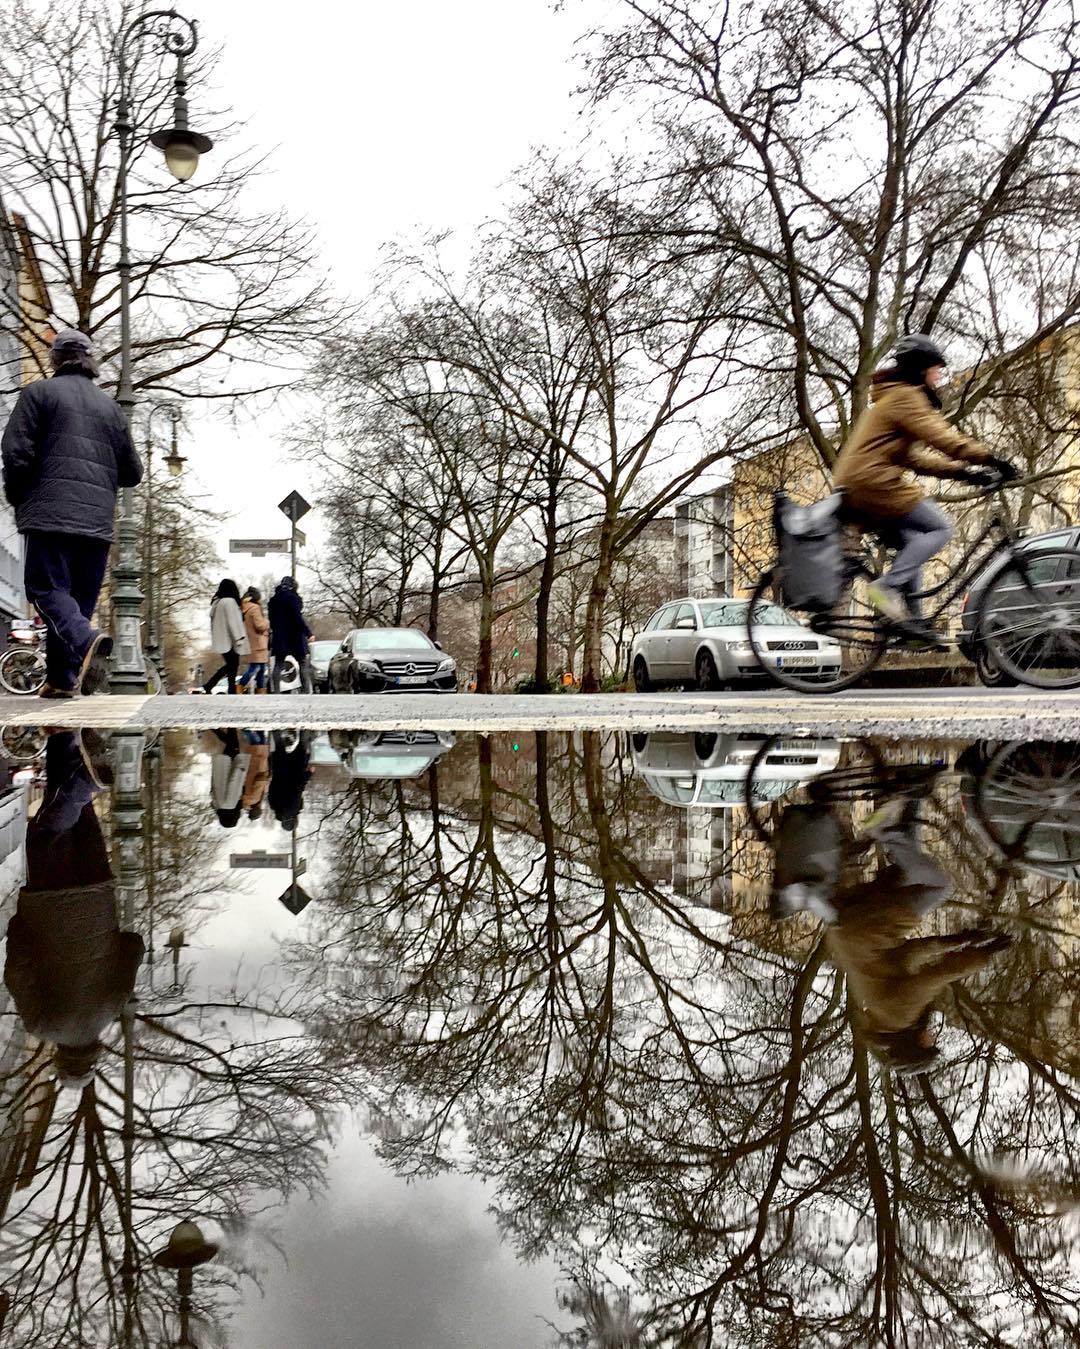 #paracegover Descrição para deficientes visuais: a imagem mostra uma rua onde passam pessoas, carros e ciclistas. Tudo, incluindo o poste de iluminação, o céu nublado e as árvores sem folhas, está refletido na poça d'água em primeiro plano. — at Gneisenaustraße.